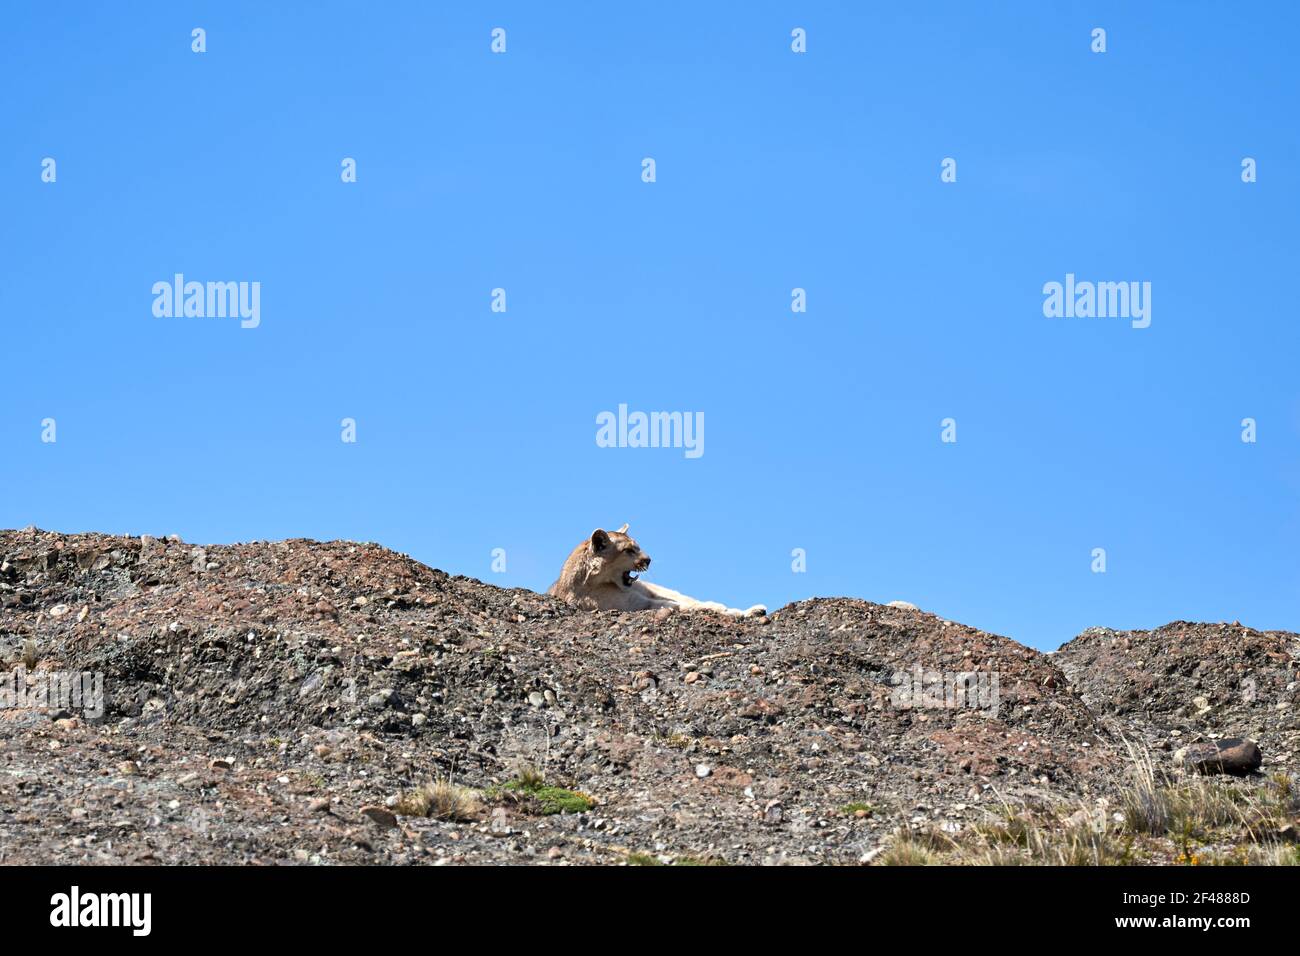 Puma concolor, couguar ou lion de montagne est un grand chat sauvage de la sous-famille des felinae. Situé sur une crête des montagnes andines à Torres del Paine natio Banque D'Images